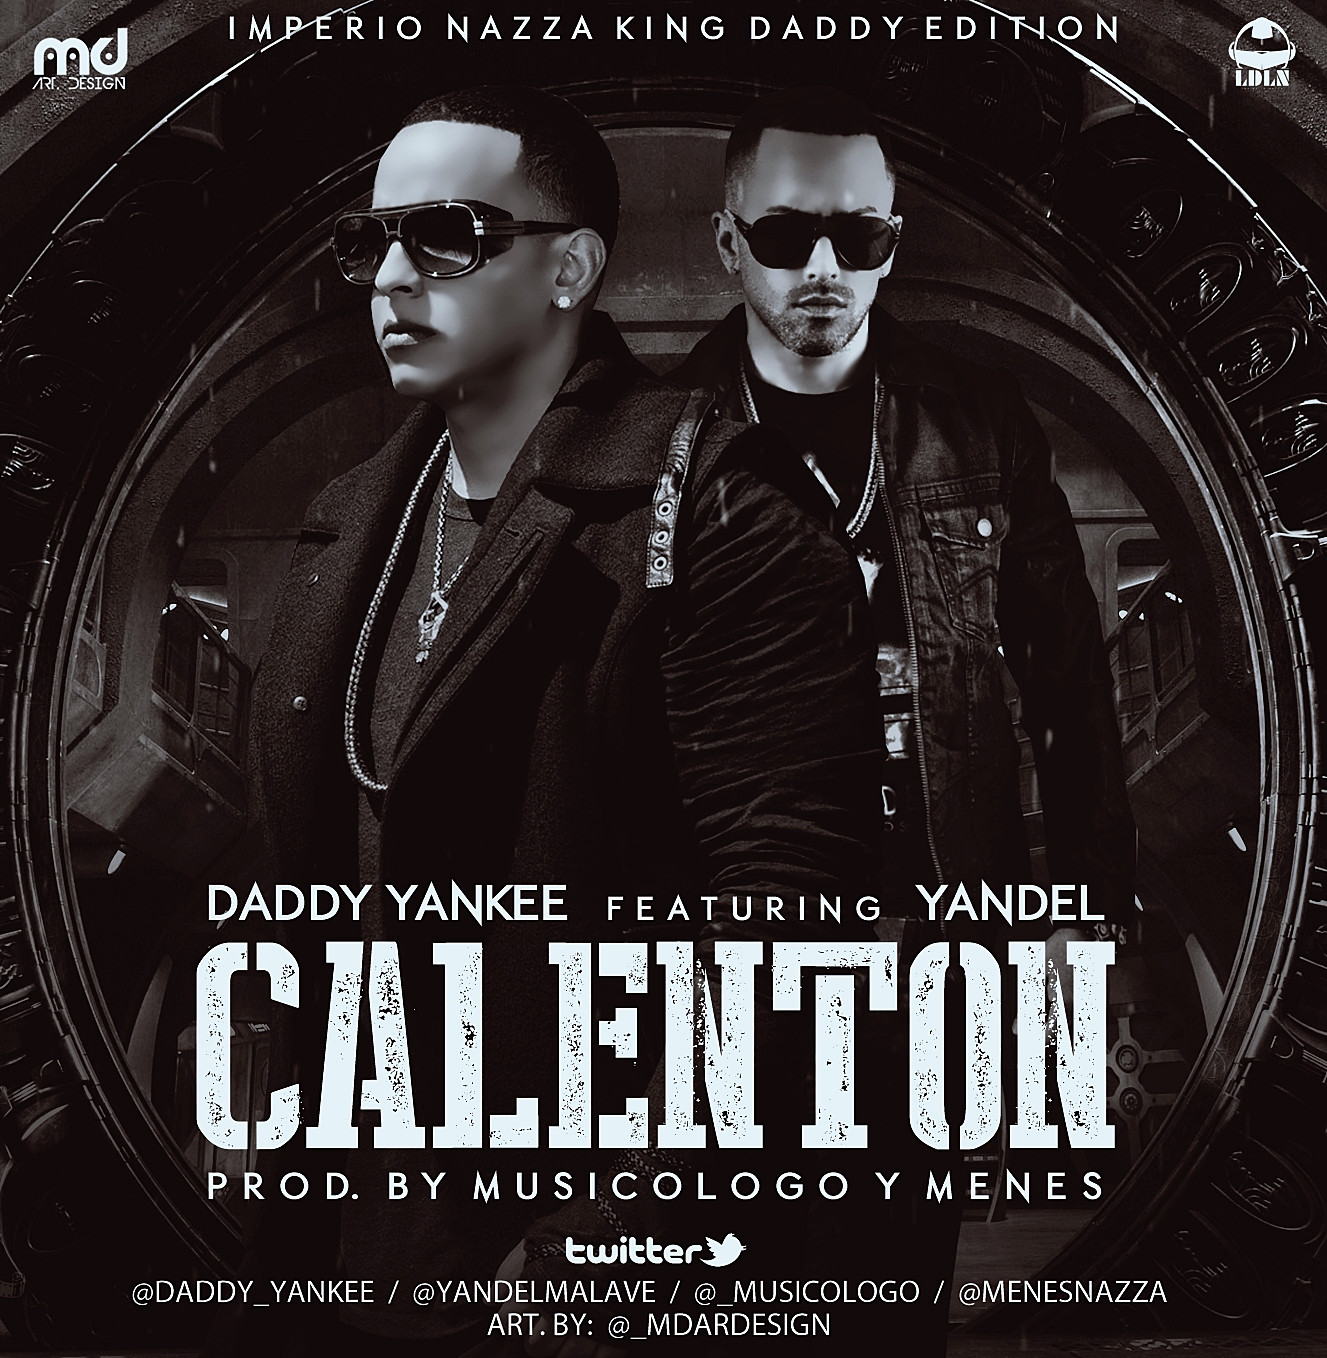 Calenton - Daddy Yankee ft. Yandel